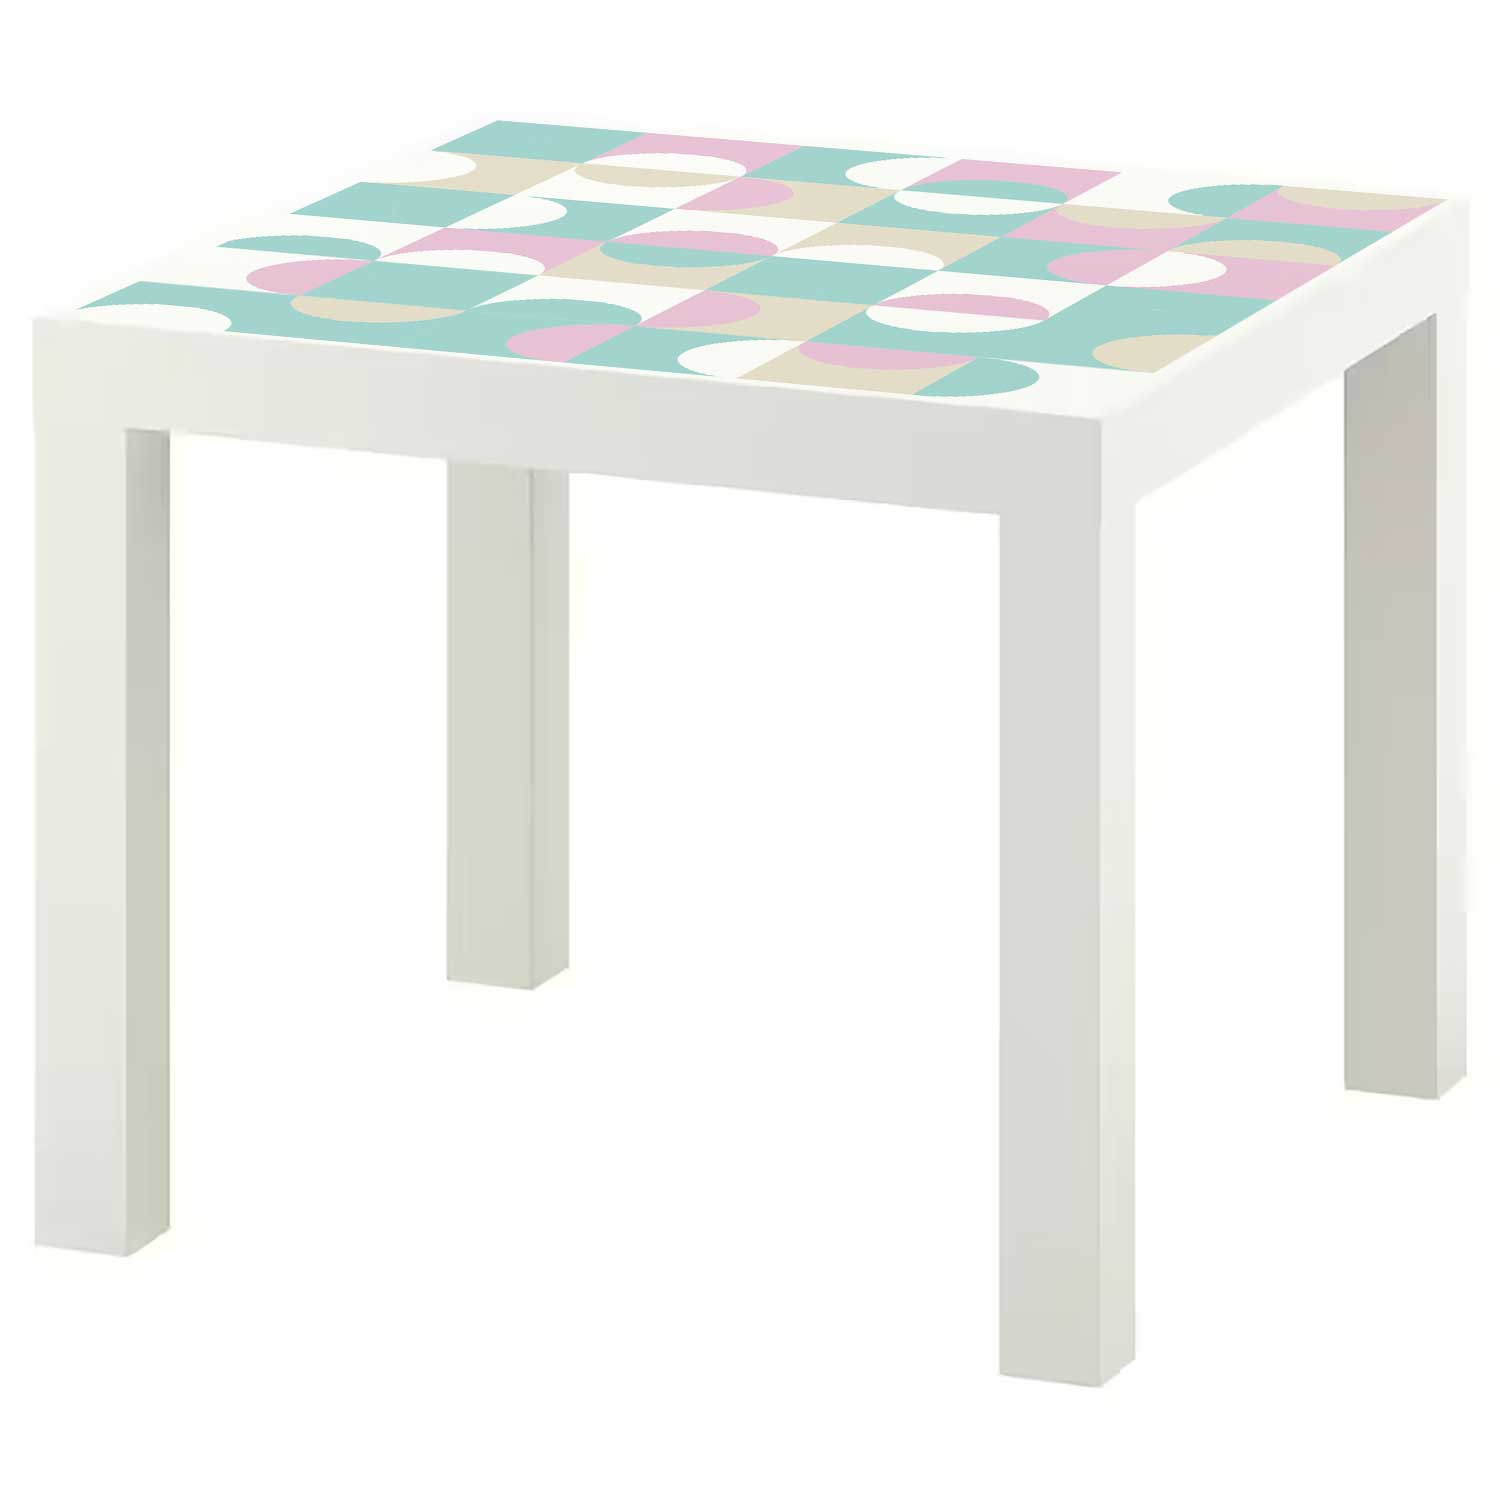 Möbelfolie für IKEA Lack Tisch 55x55 cm 'Bauhaus Fliesen'